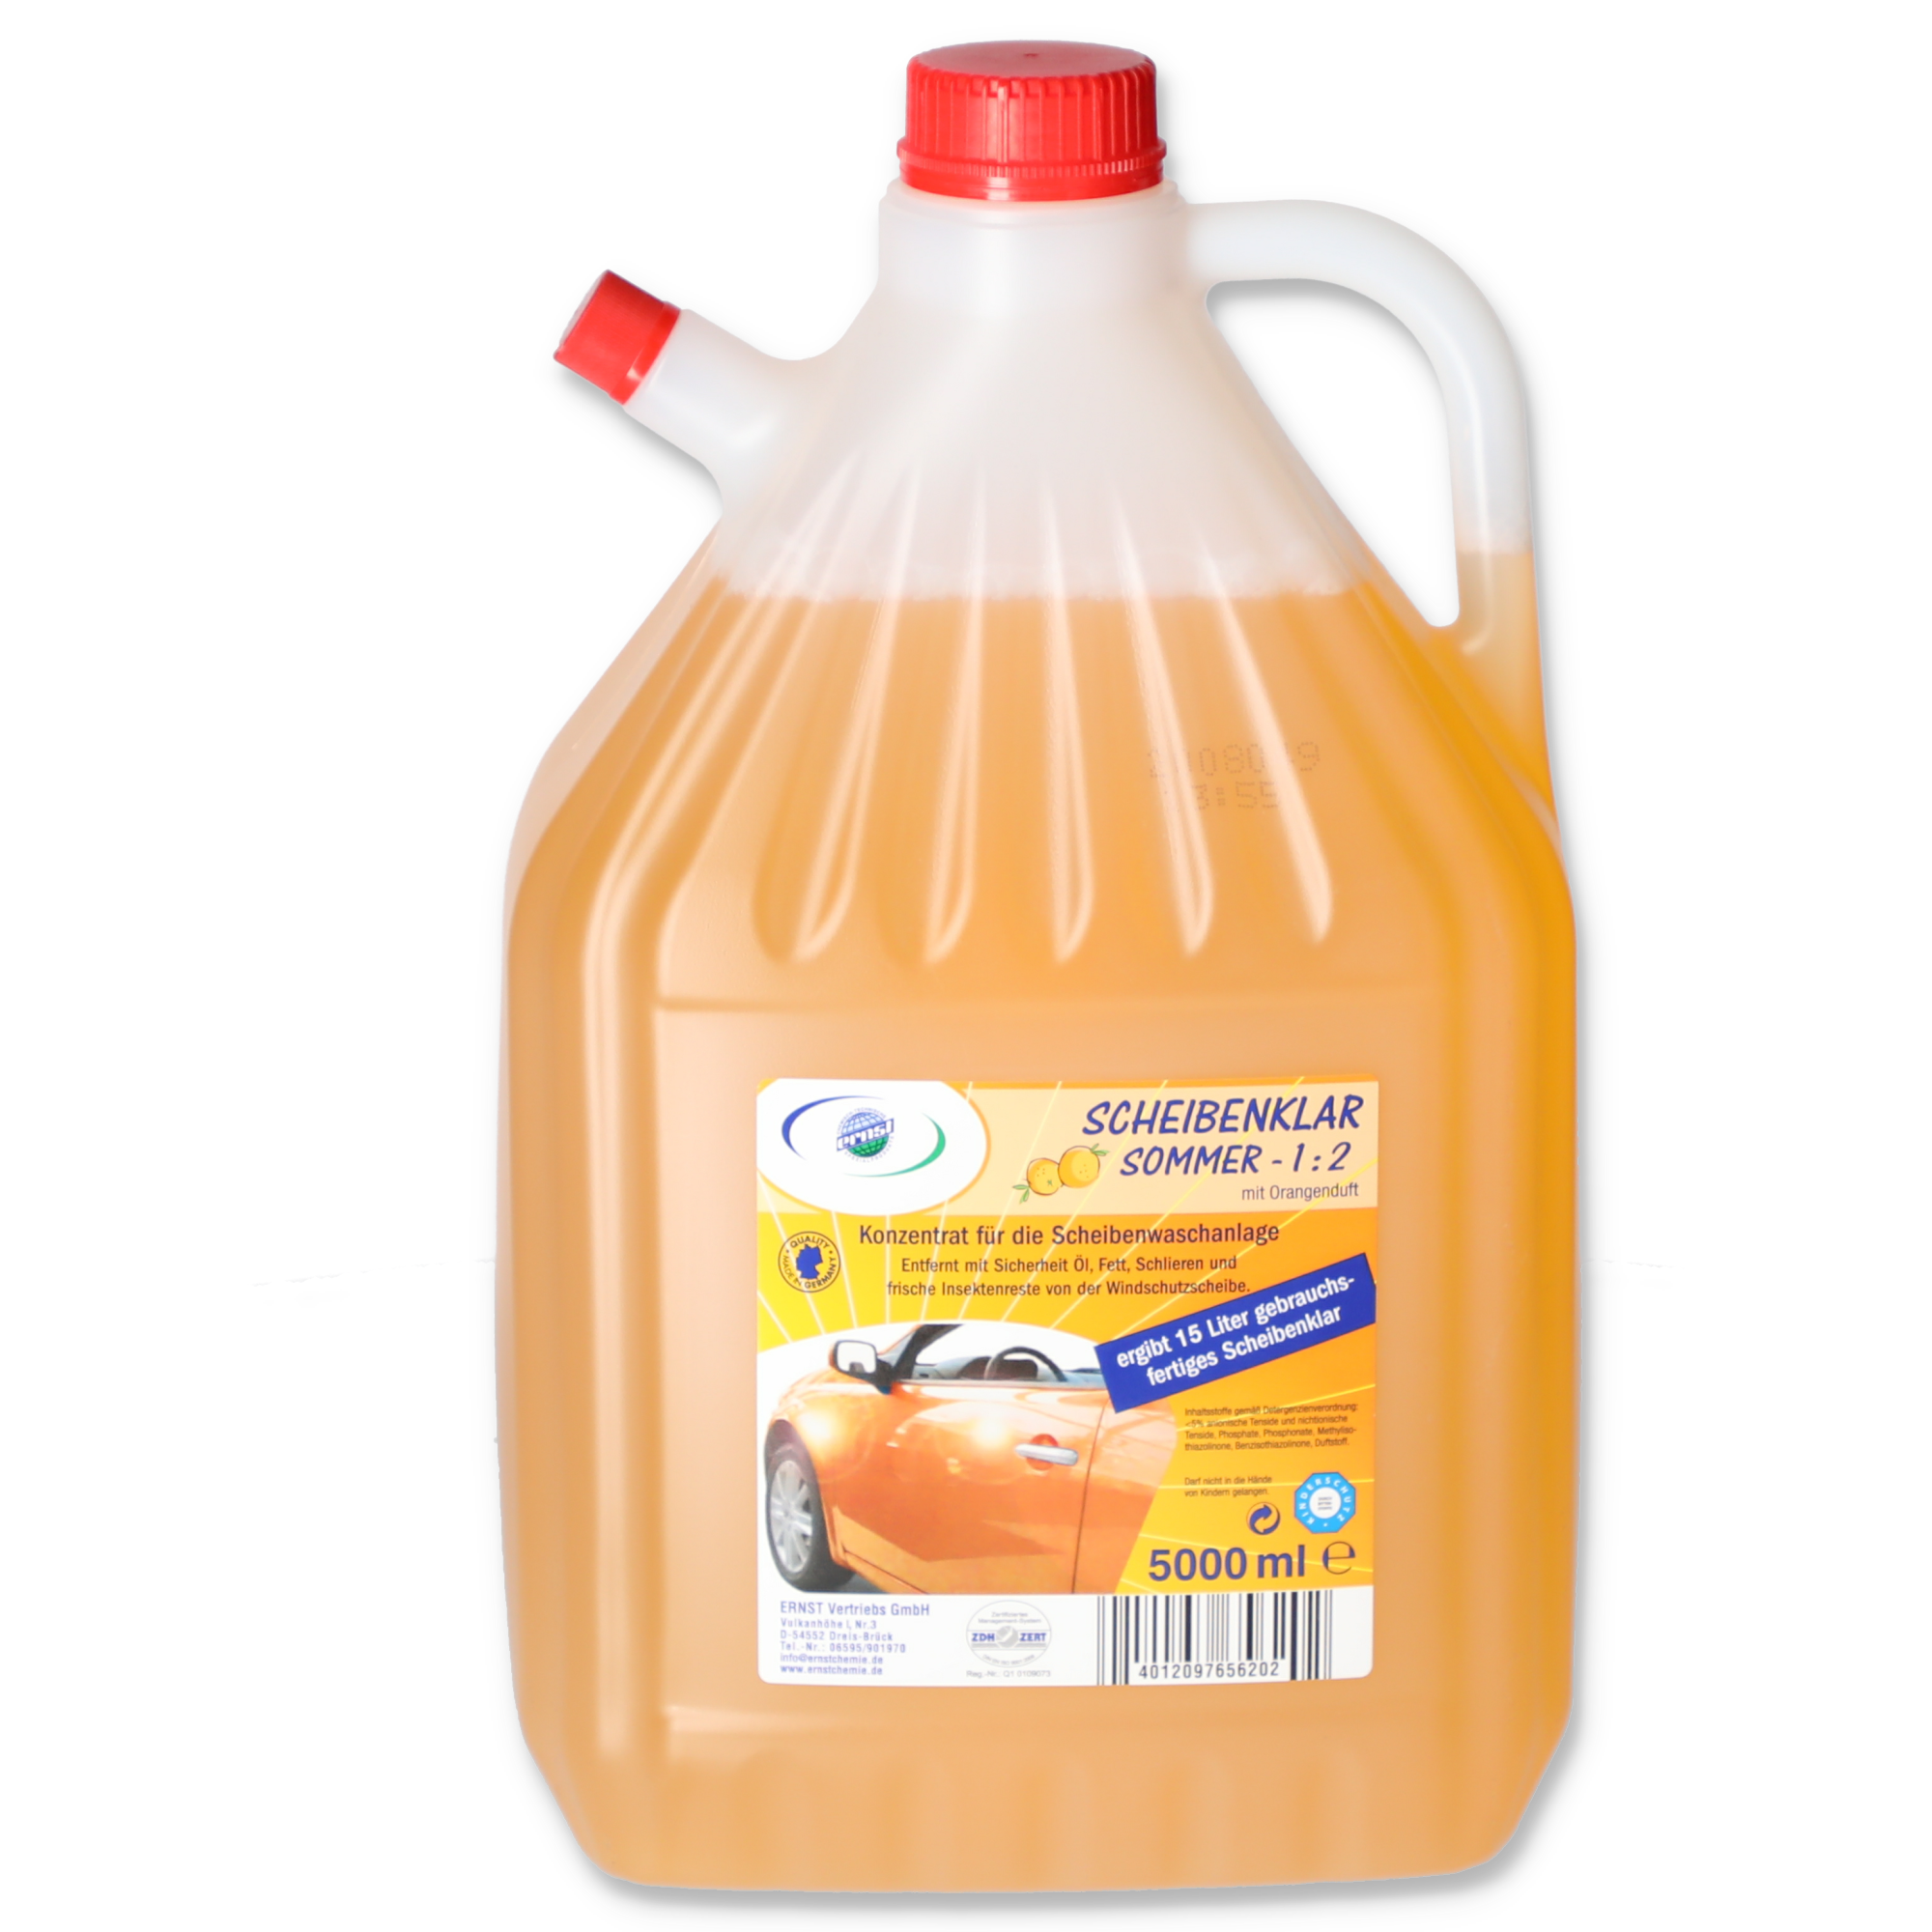 Scheibenklar-Konzentrat 'Orange' 5 l + product picture